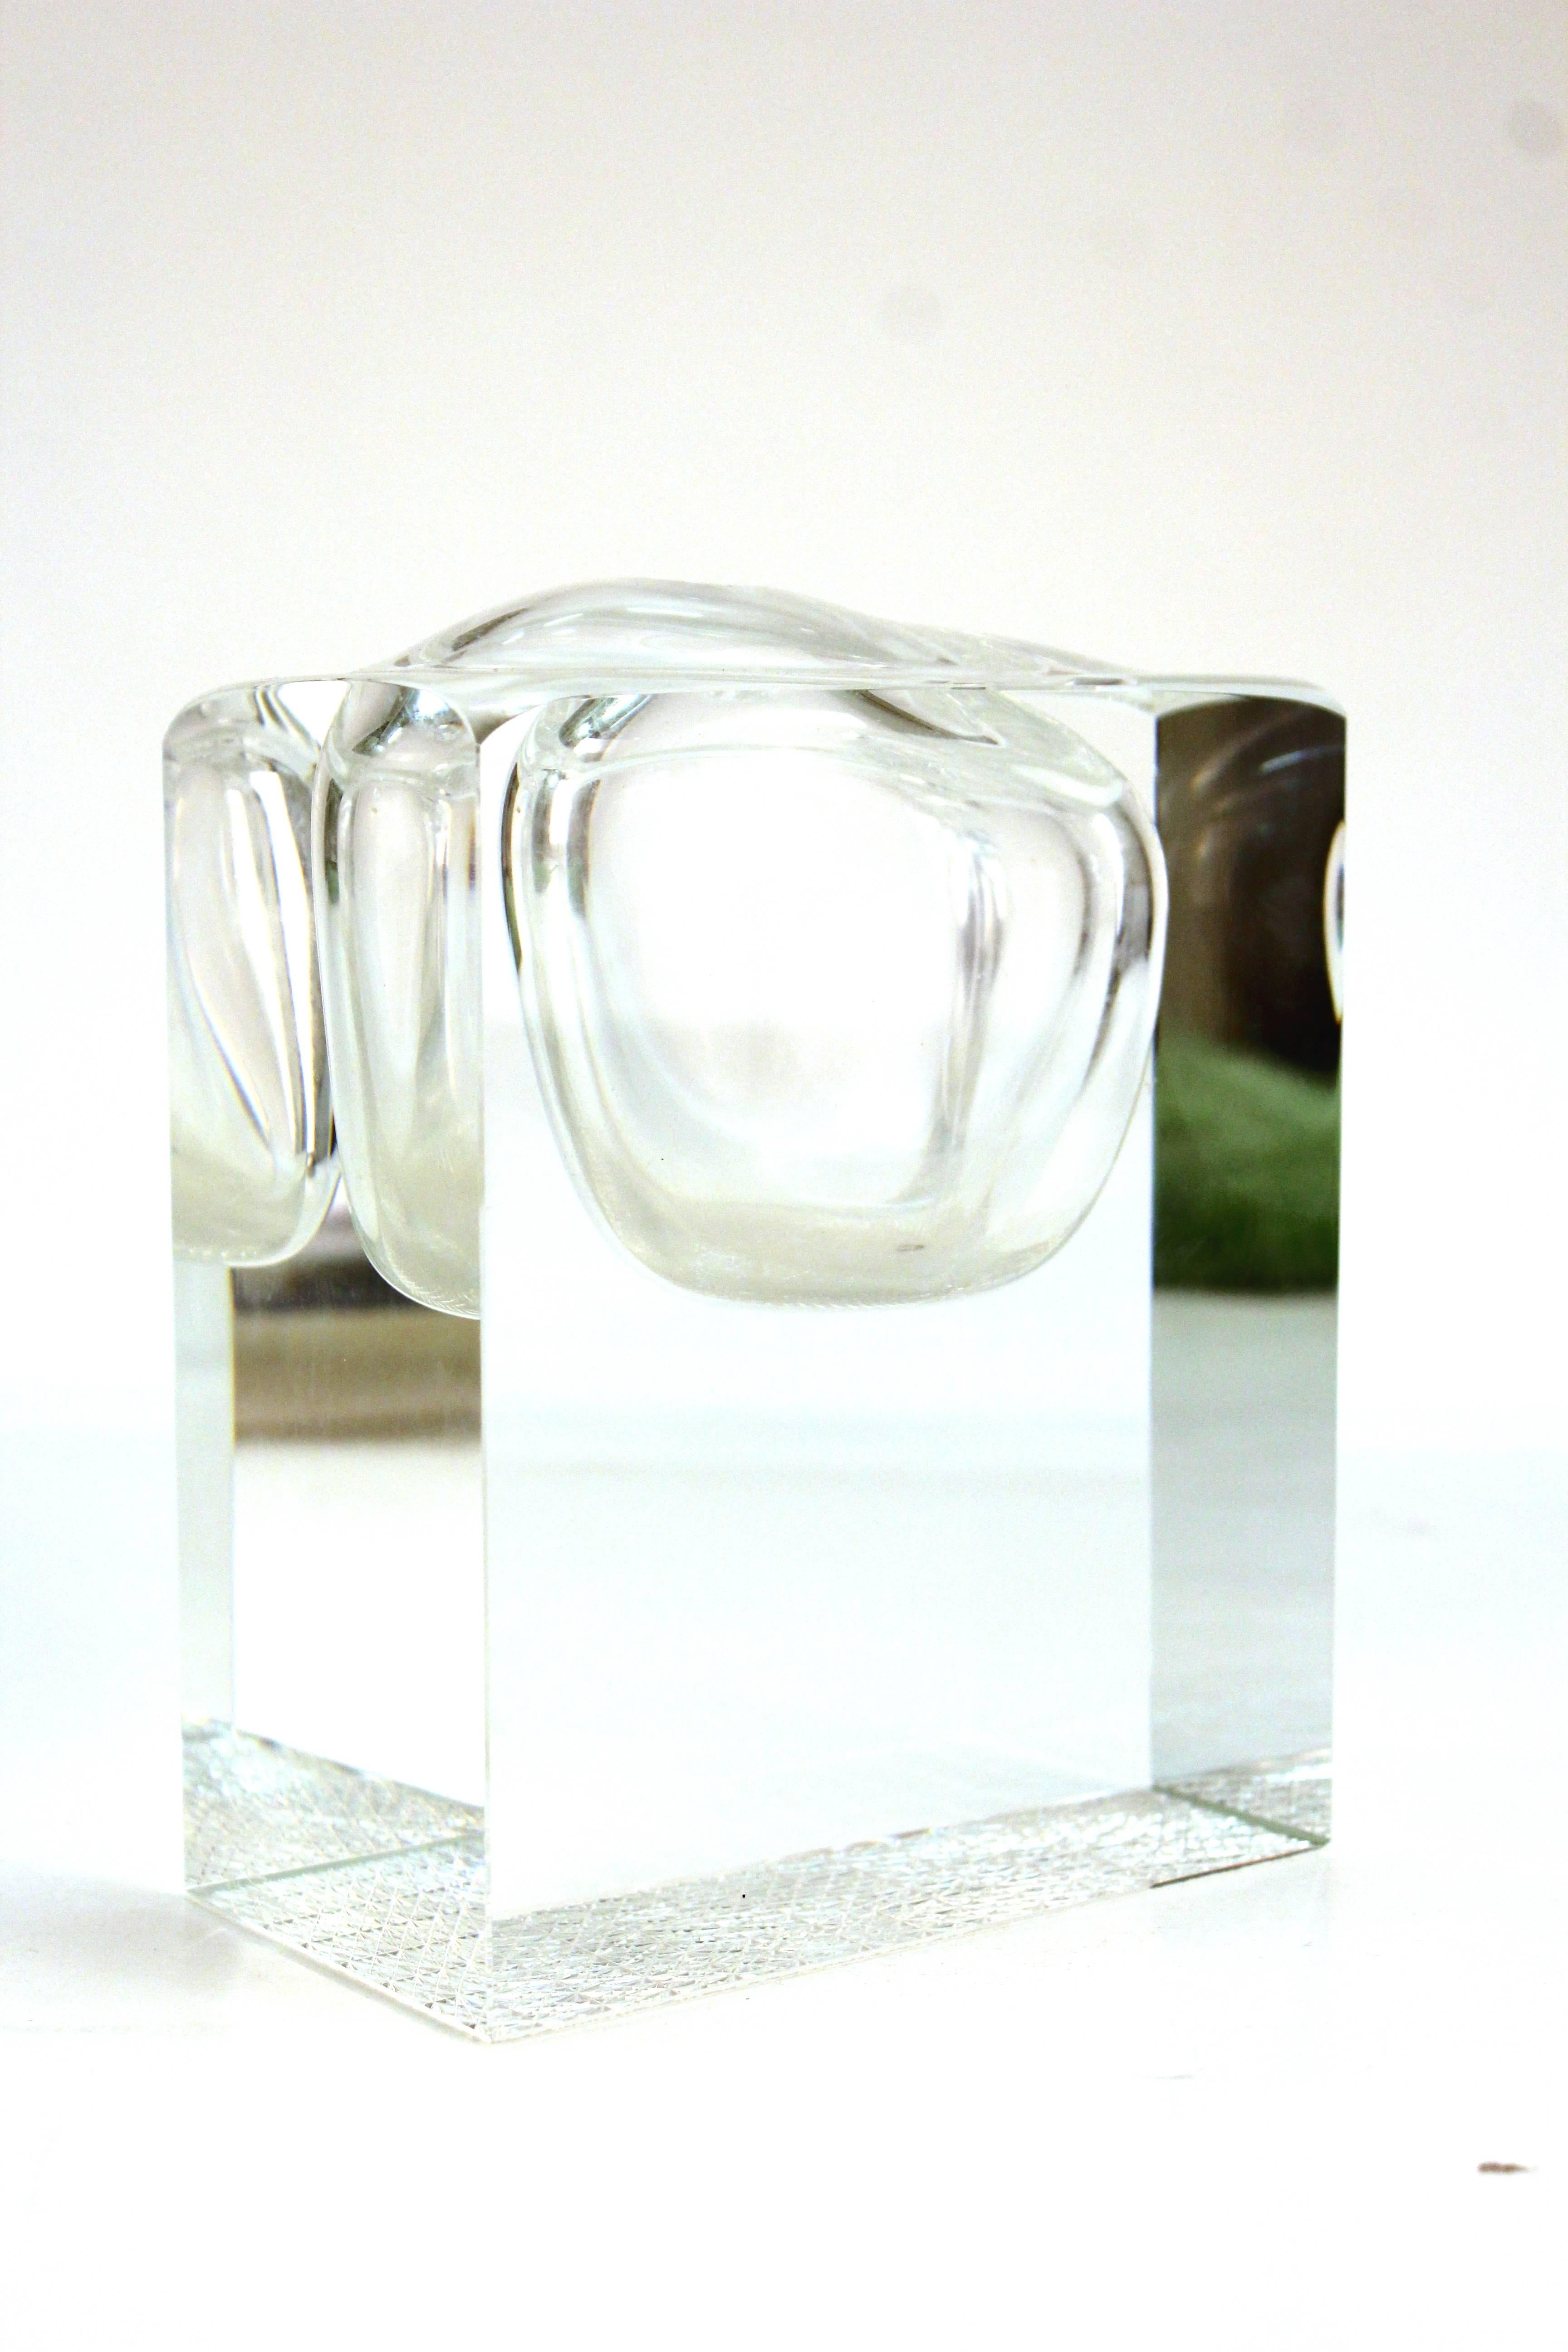 Un vase géométrique en cristal au plomb de style Mid-Century Modern. Formé pour ressembler à une bulle dans un plus grand bloc de cristal. Comprend un trou au sommet assez grand pour une seule fleur. La pièce est signée de façon illisible. Malgré